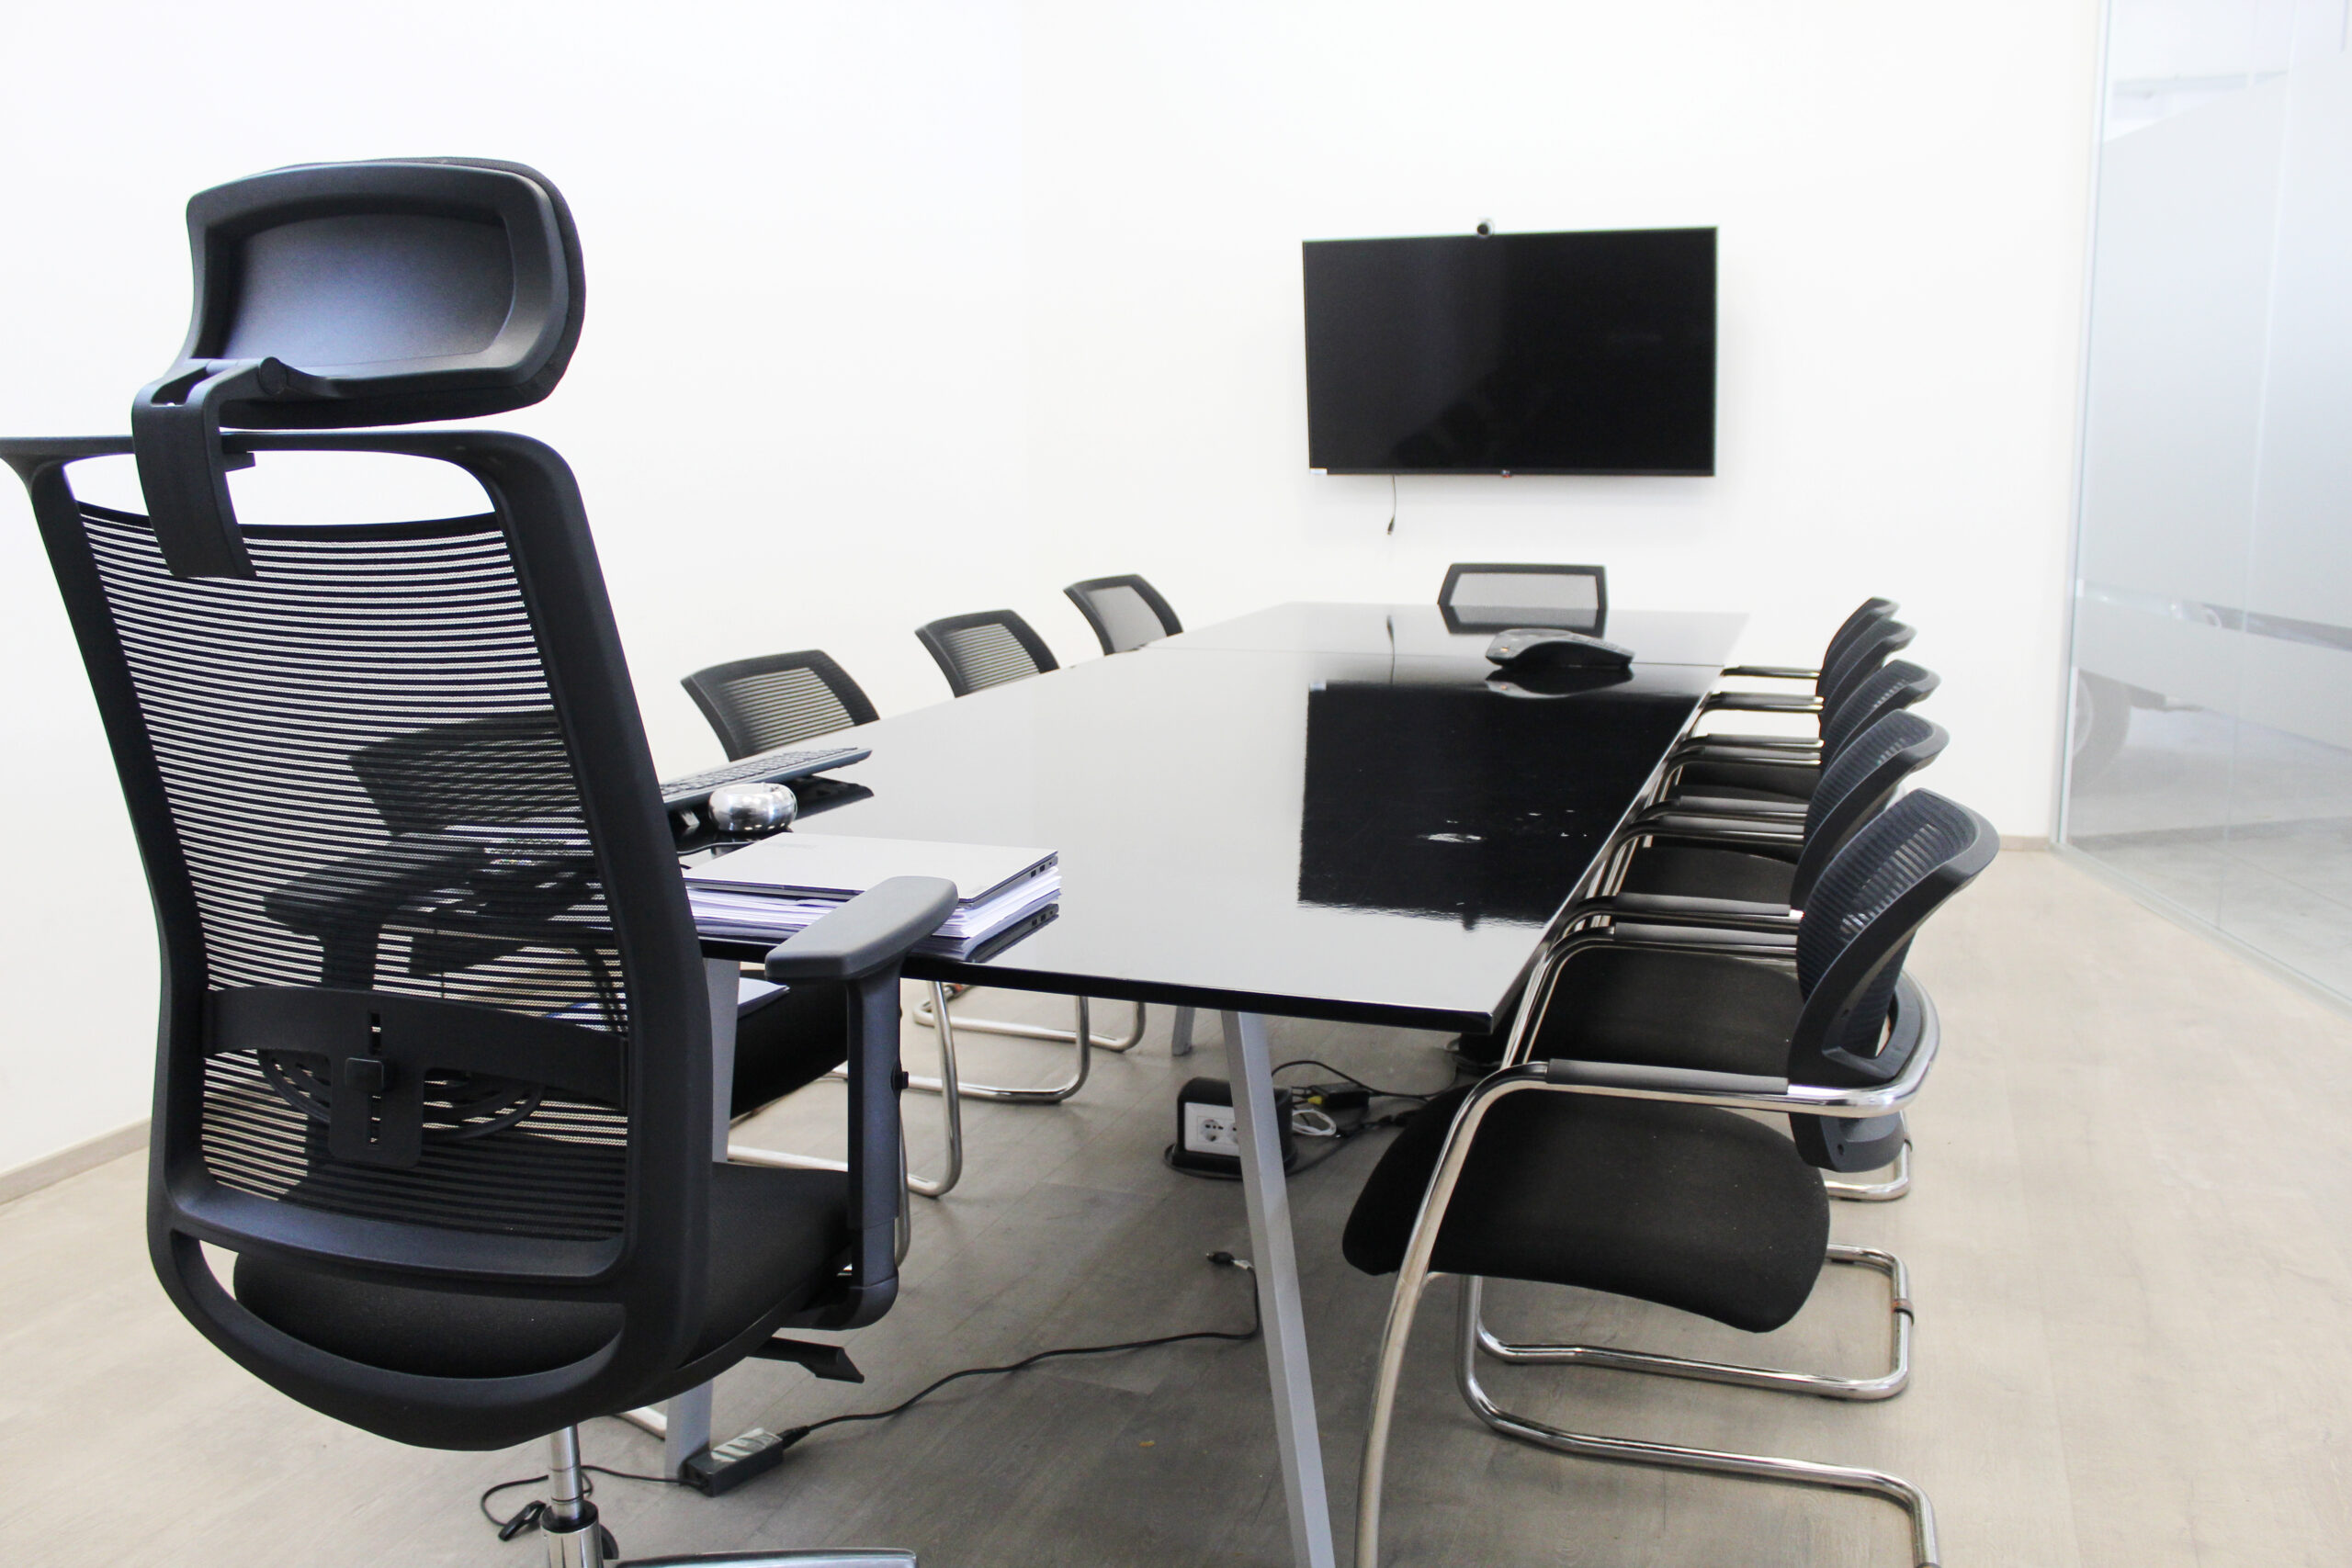 sancilio evotech molfetta - sala conferenze meeting riunioni scrivania sedute ergonomiche Totorizzo